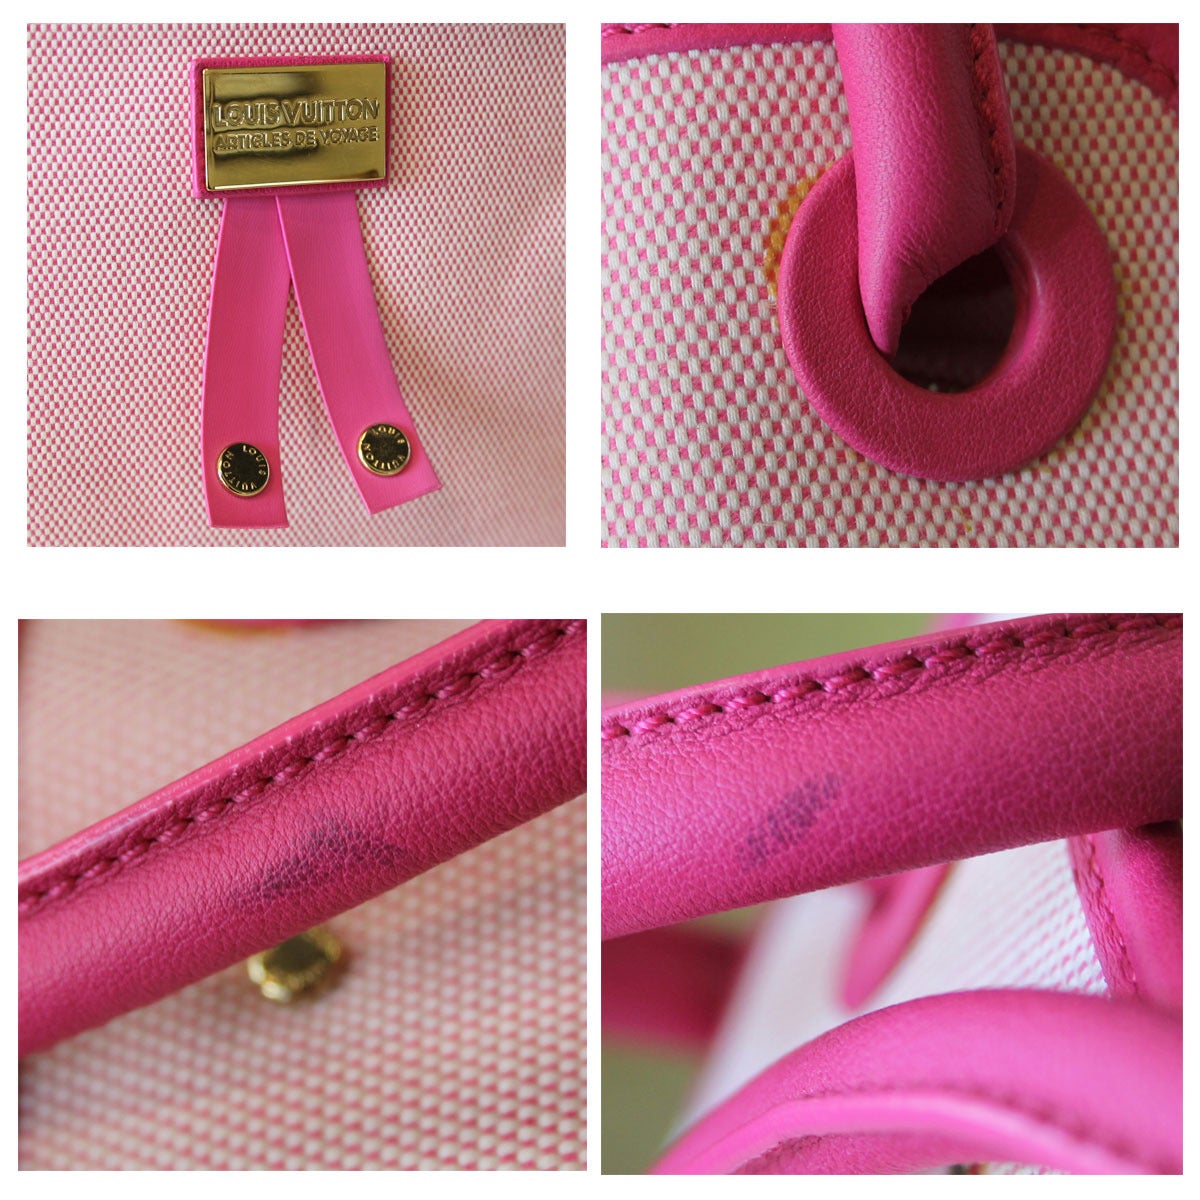 Women's Louis Vuitton Articles de Voyage Pink Rider Bag